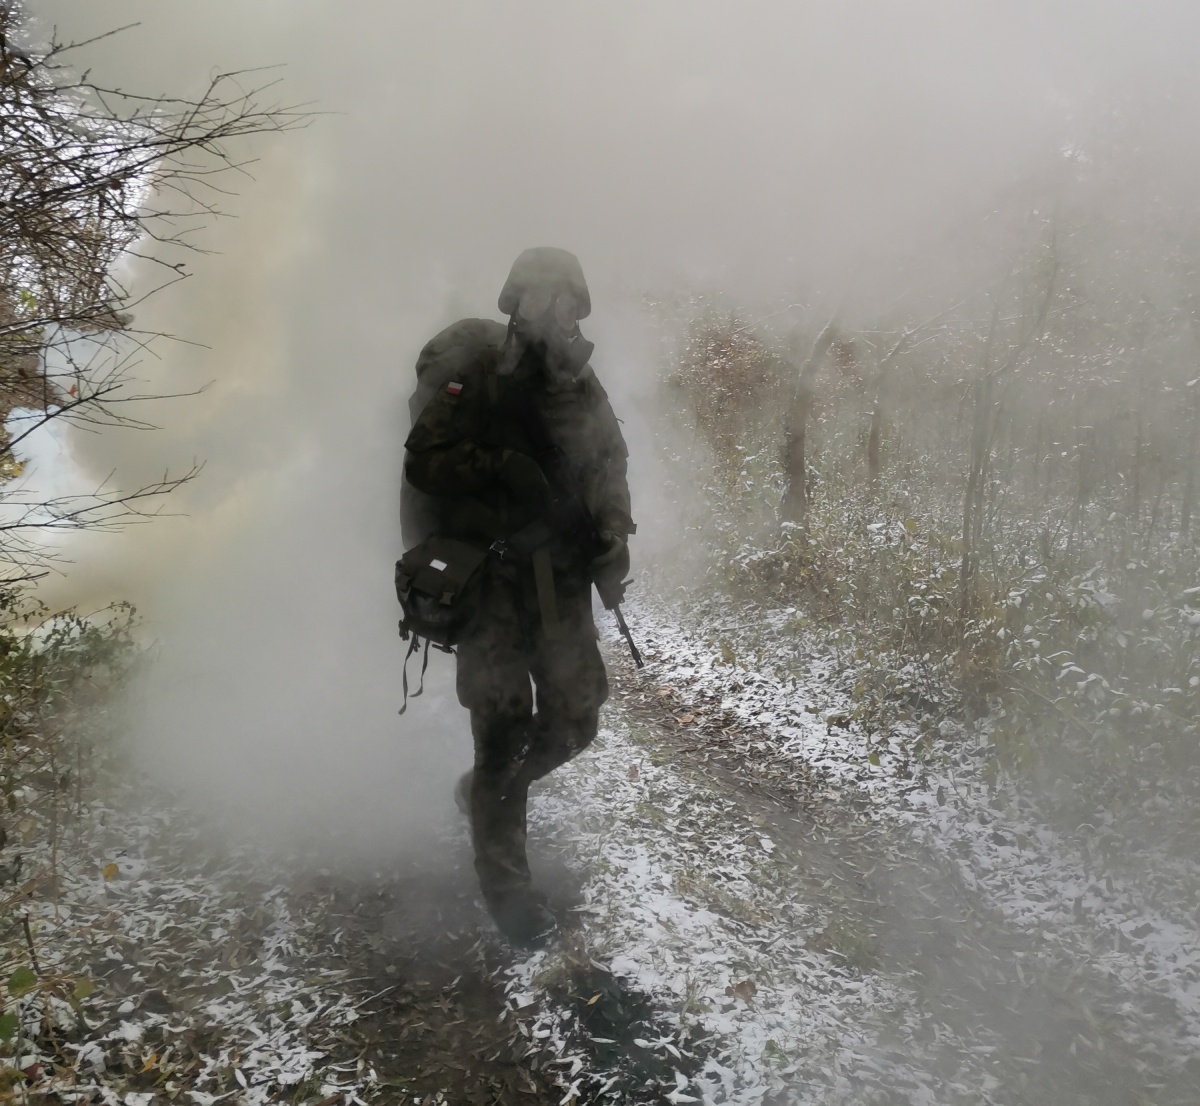 żołnierz wyłania się z mgły